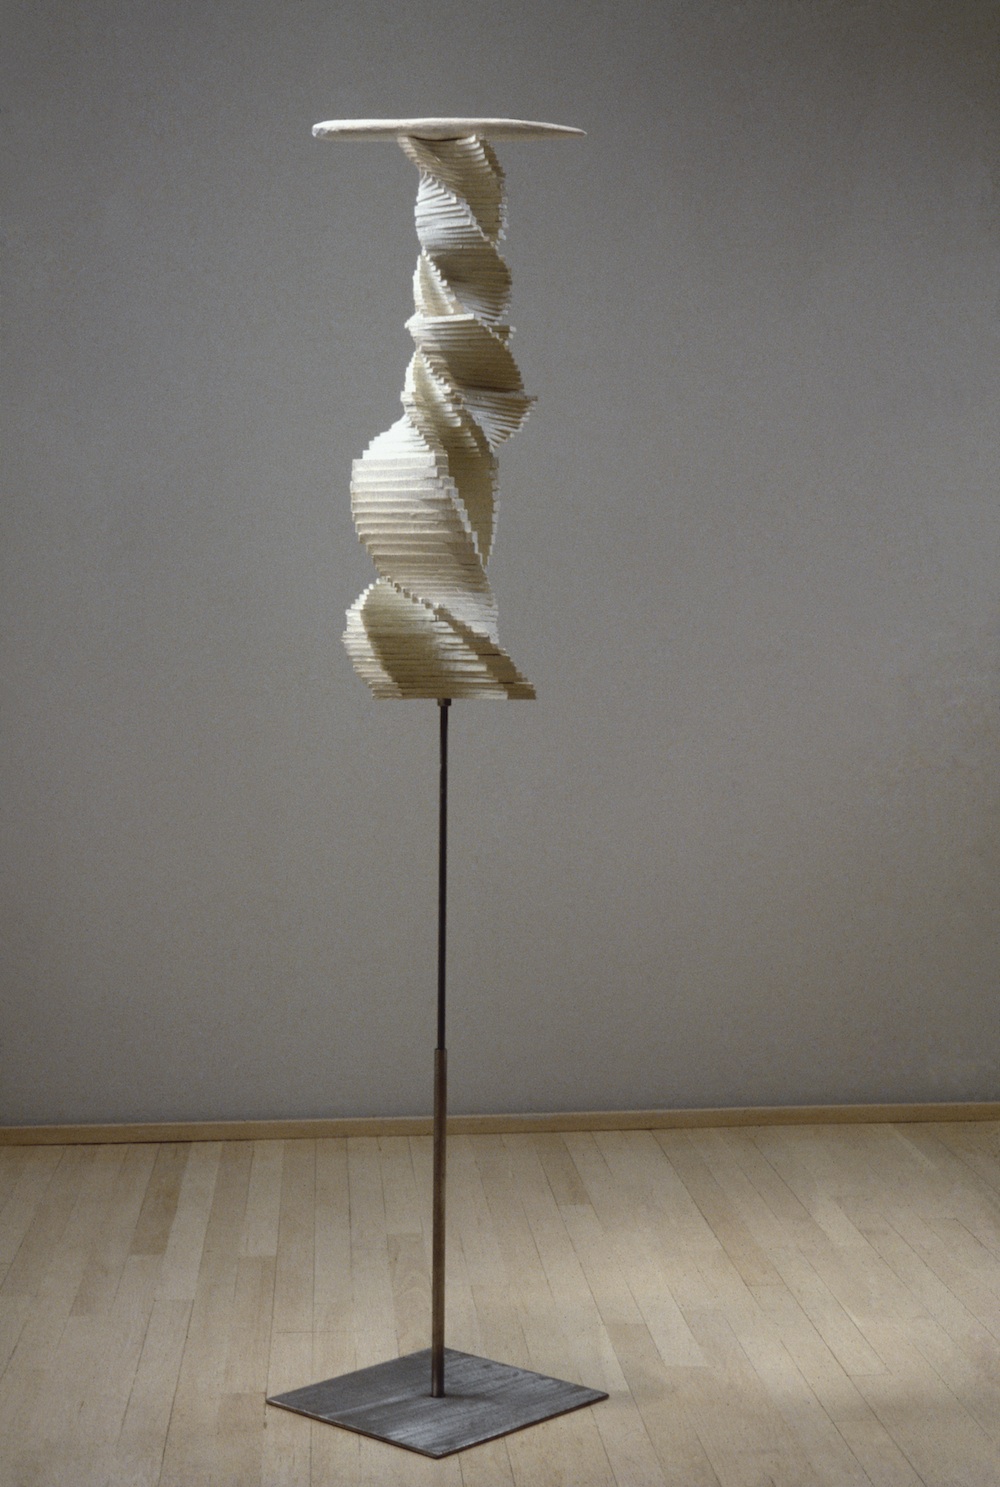 A wooden sculpture of a spiraling form atop a steel rod.  